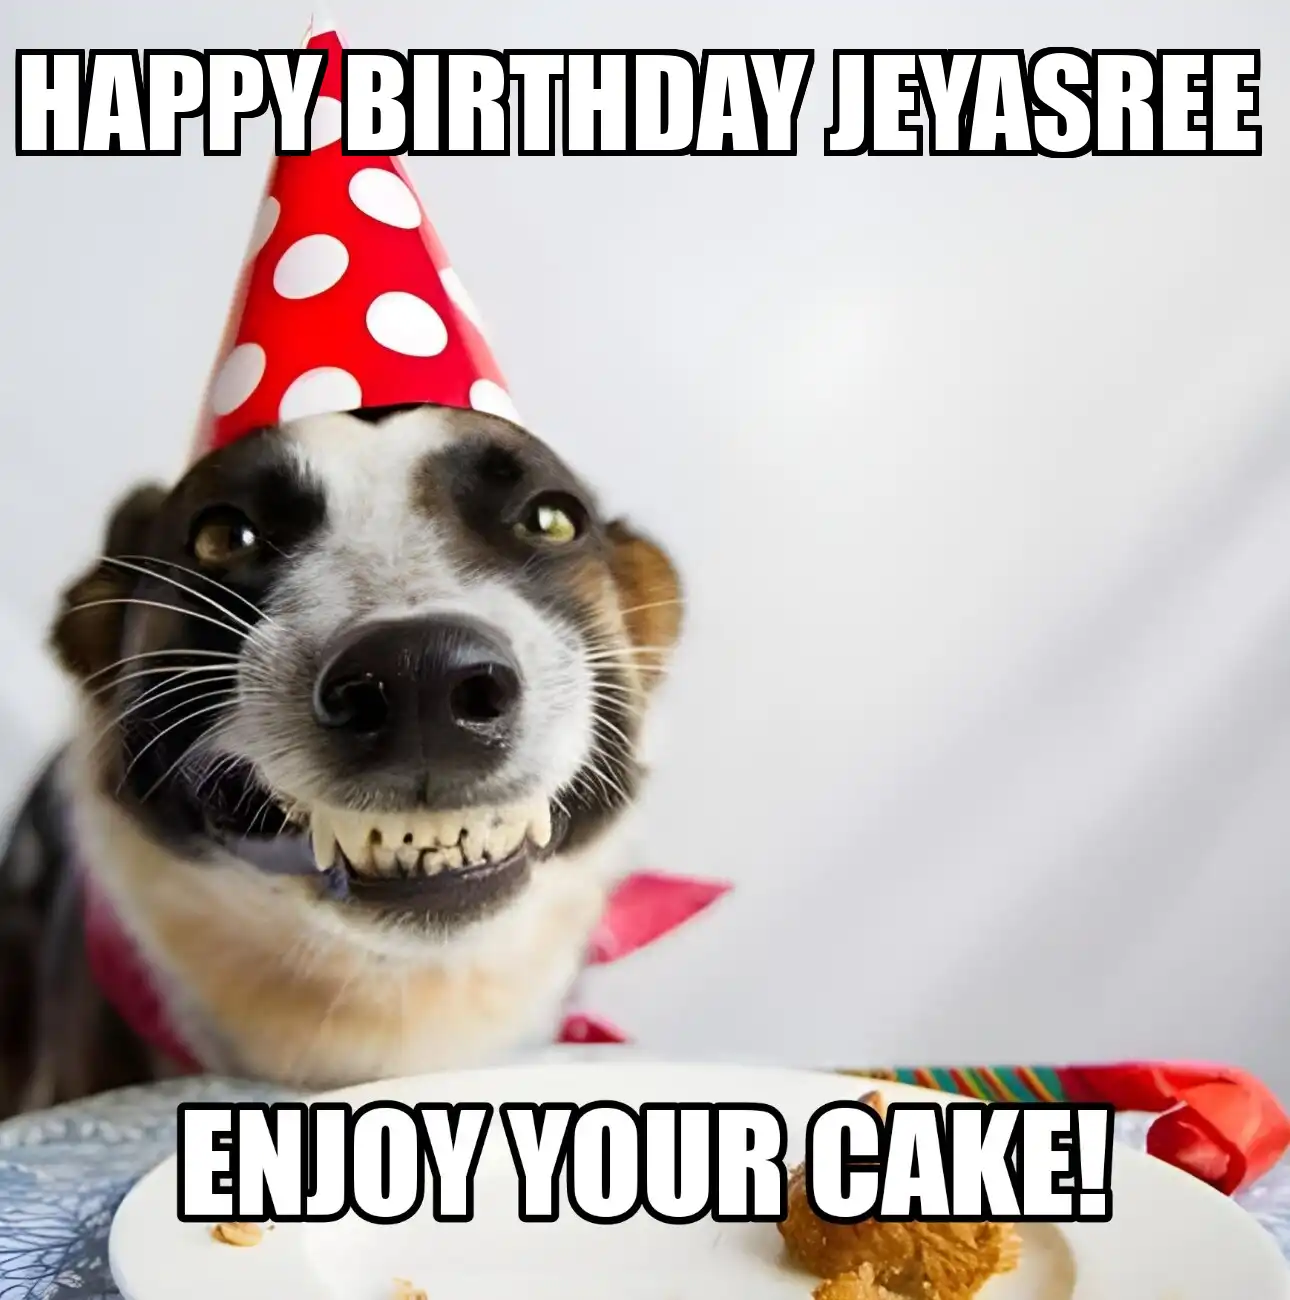 Happy Birthday Jeyasree Enjoy Your Cake Dog Meme